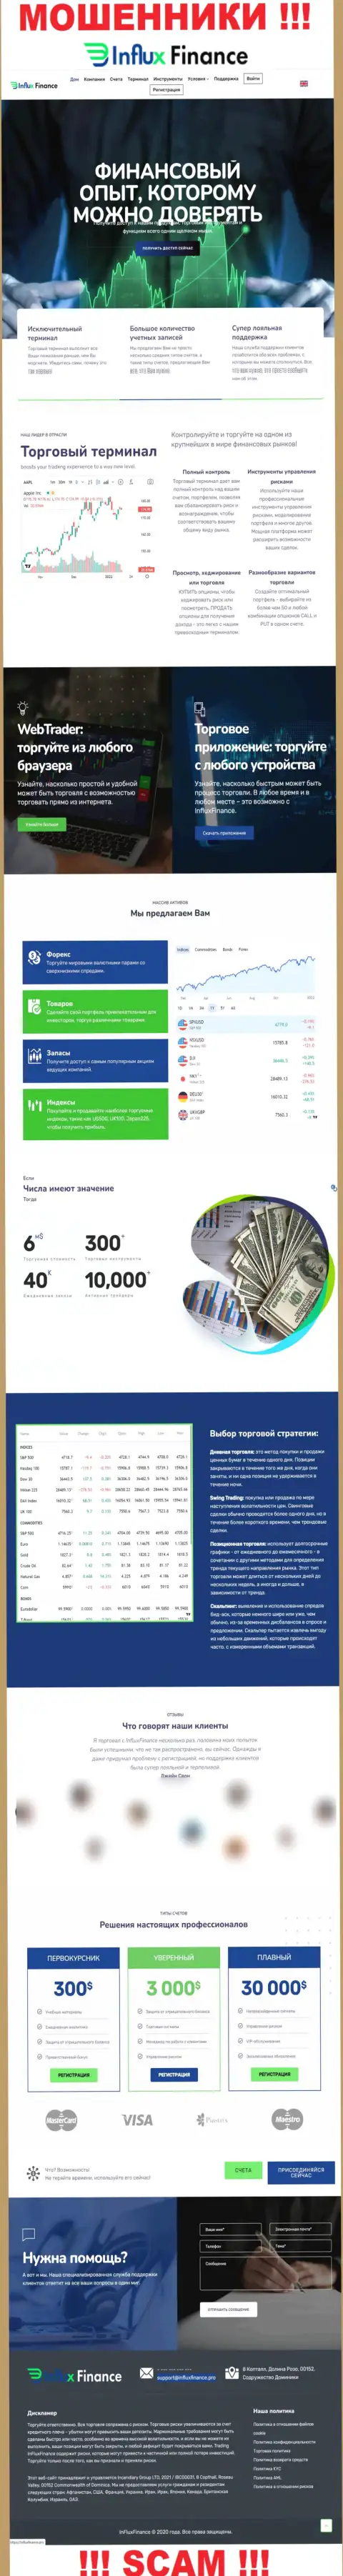 Фейковая информация от конторы InFlux Finance на официальном информационном сервисе мошенников